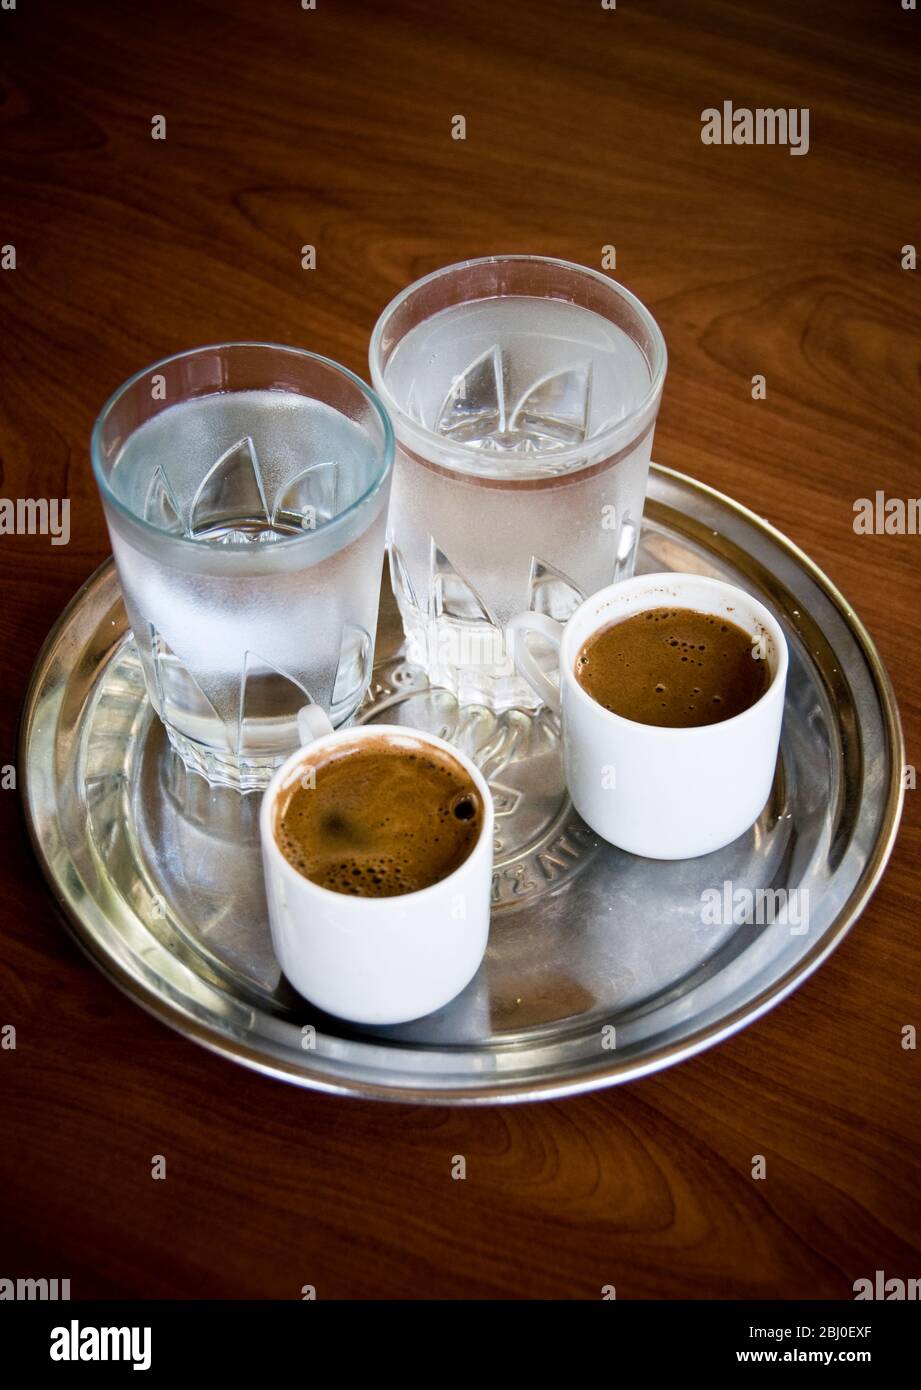 Due piccole tazze di caffè greco con bicchieri d'acqua di accompagnamento serviti in caffè cipriota sulle colline nel sud di Cipro - Foto Stock